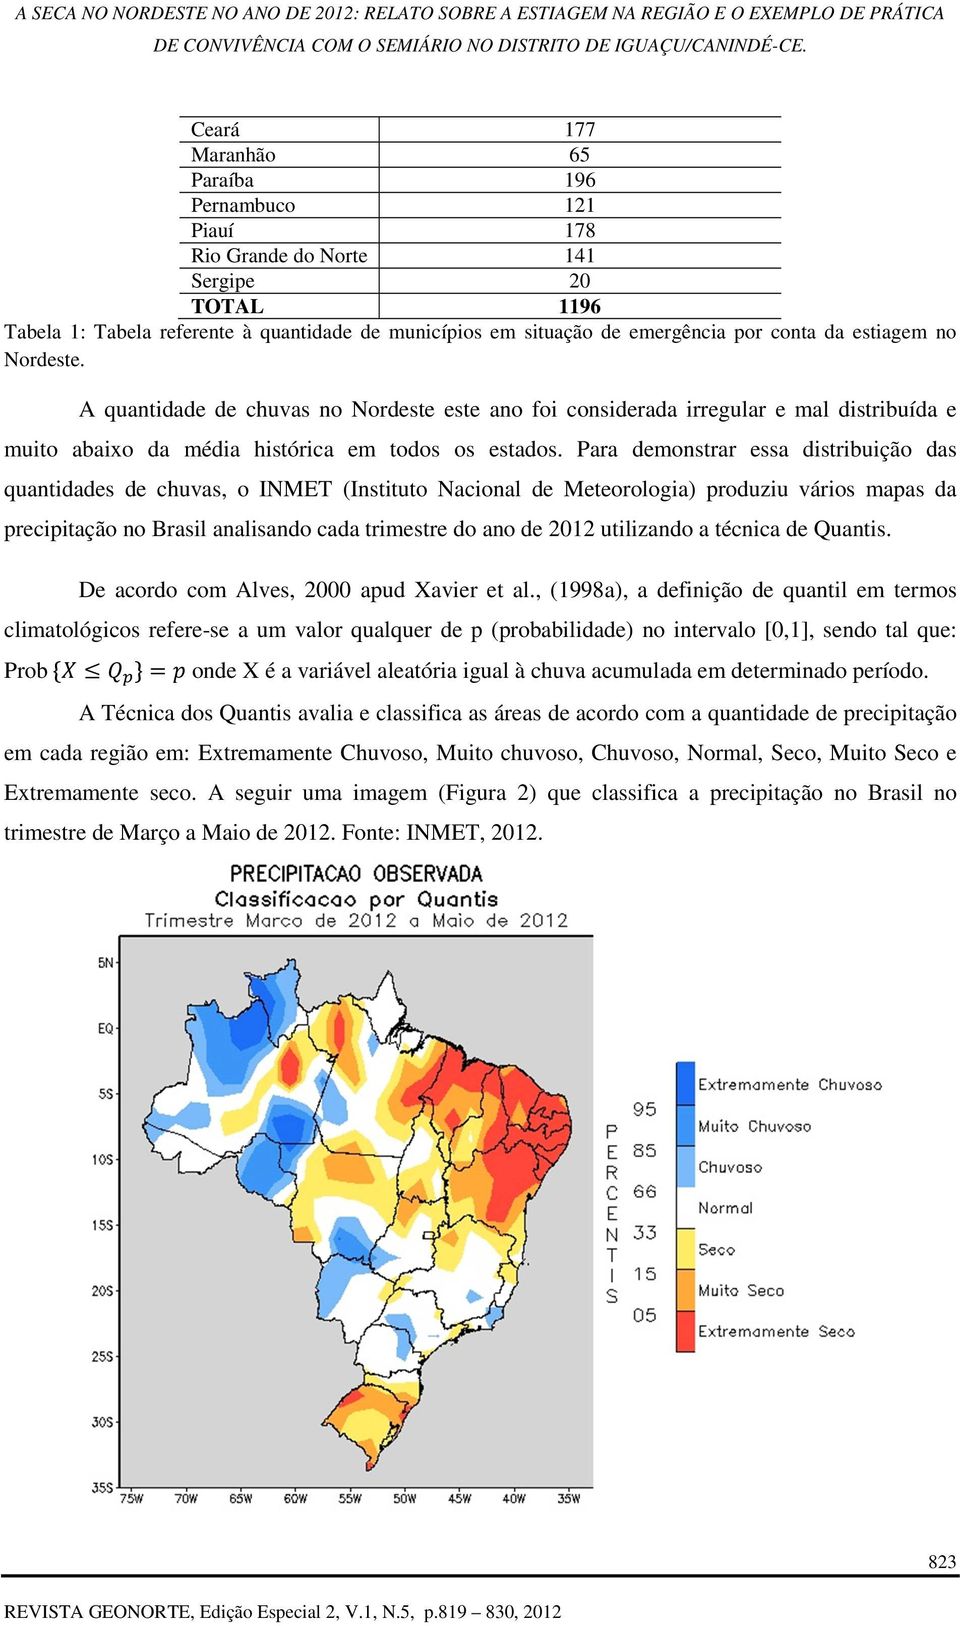 Para demonstrar essa distribuição das quantidades de chuvas, o INMET (Instituto Nacional de Meteorologia) produziu vários mapas da precipitação no Brasil analisando cada trimestre do ano de 2012